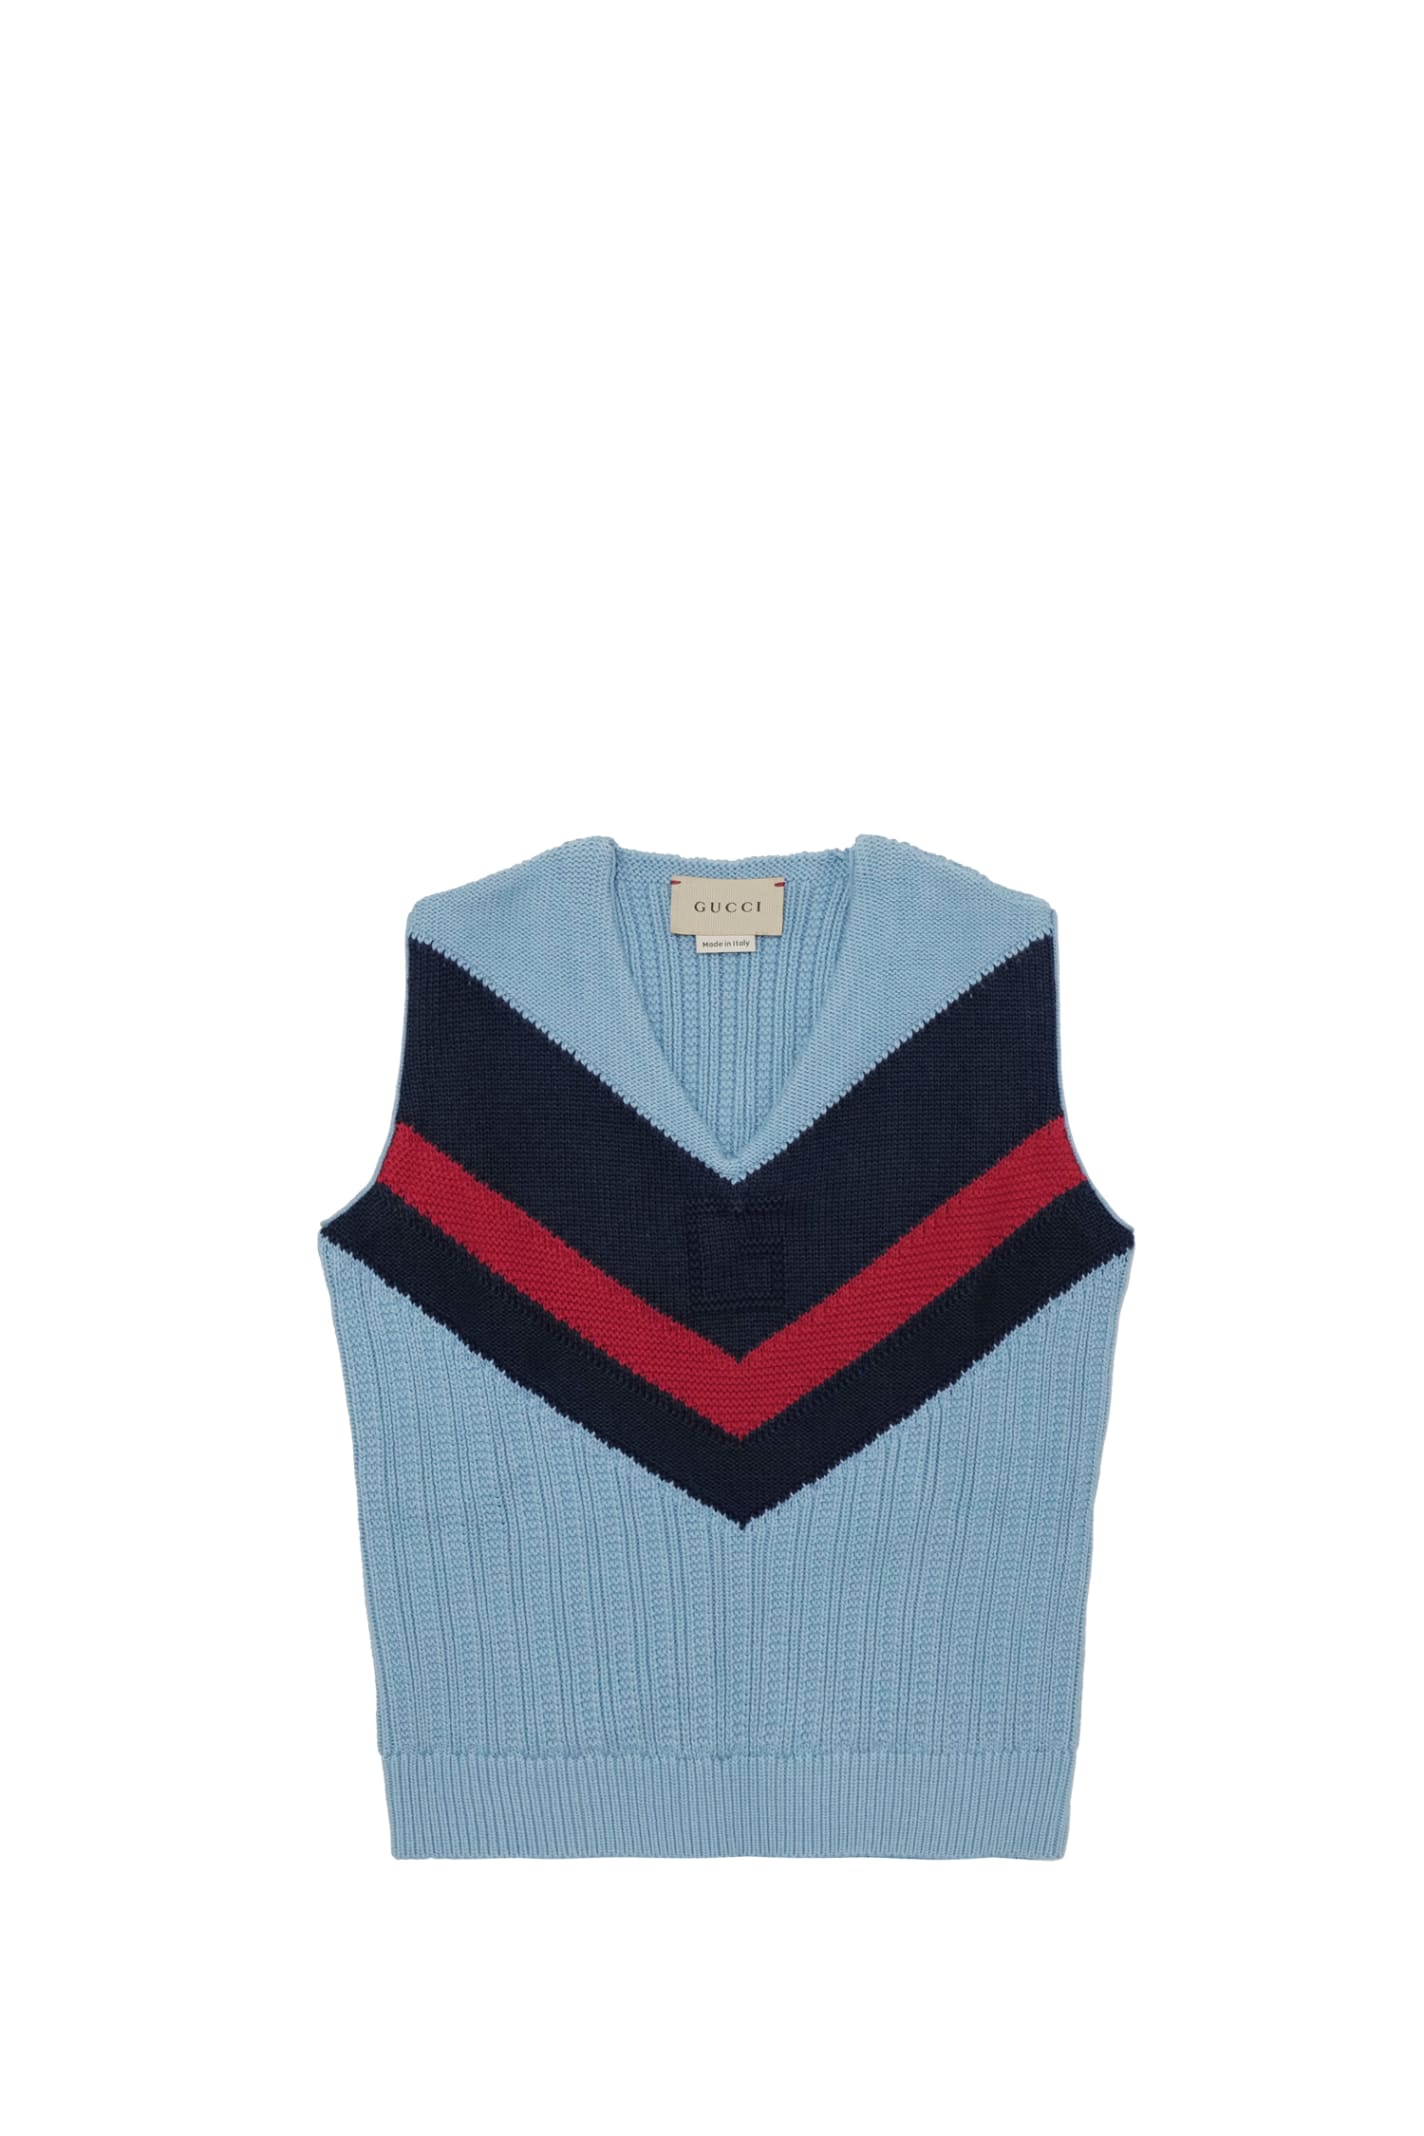 Gucci Kids' Knit Vest In Multicolor